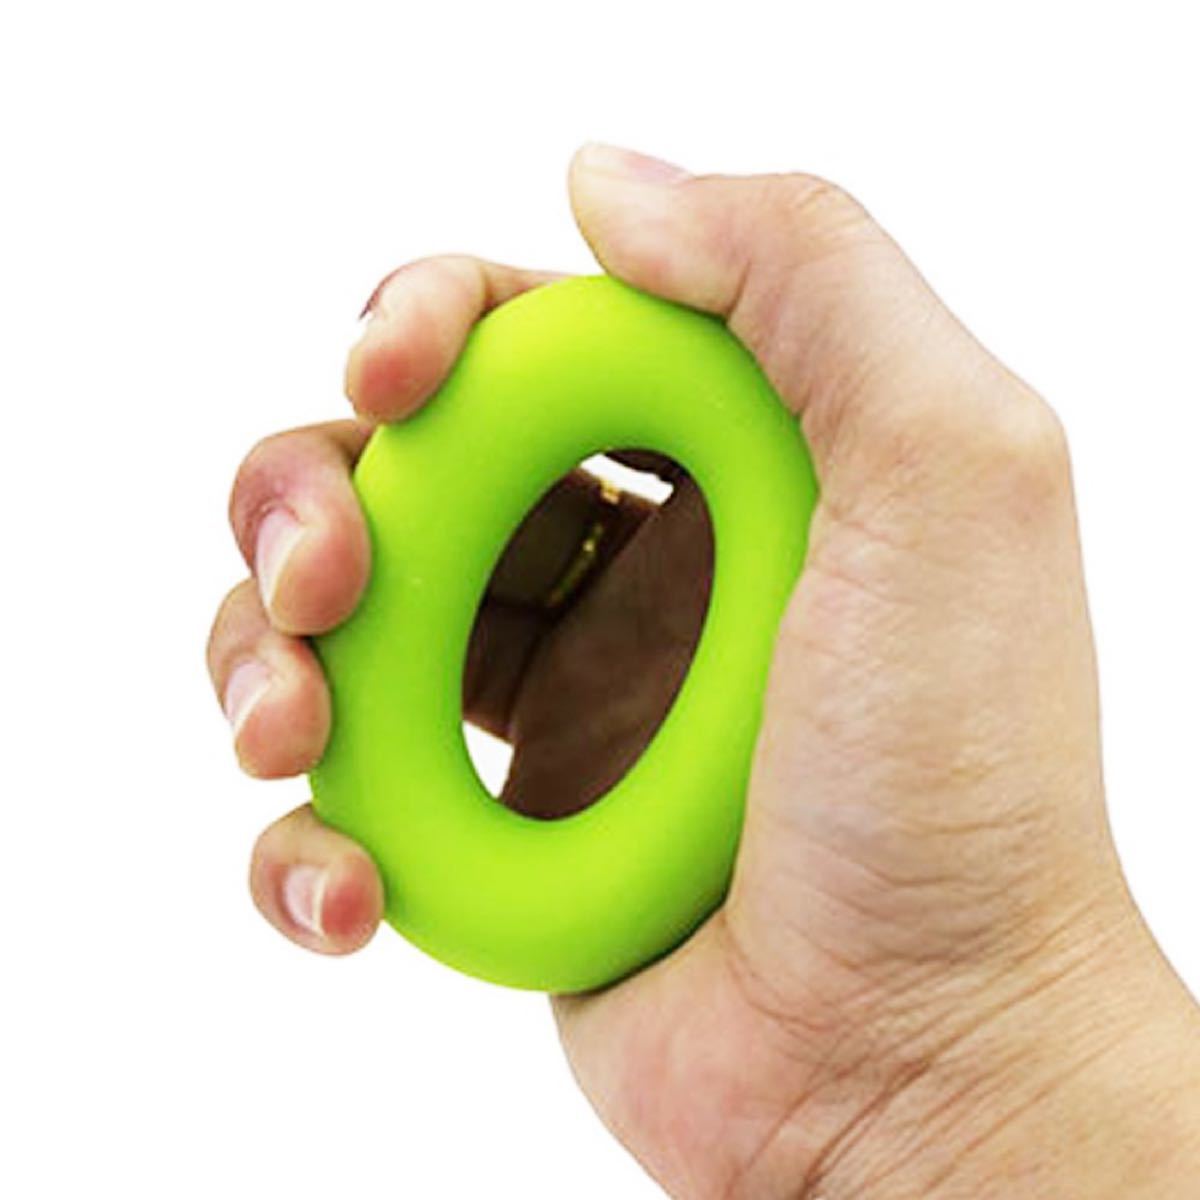 ハンドグリップ 筋力 握力 鍛える 手 指 トレーニング 筋トレ 器具 グリーン